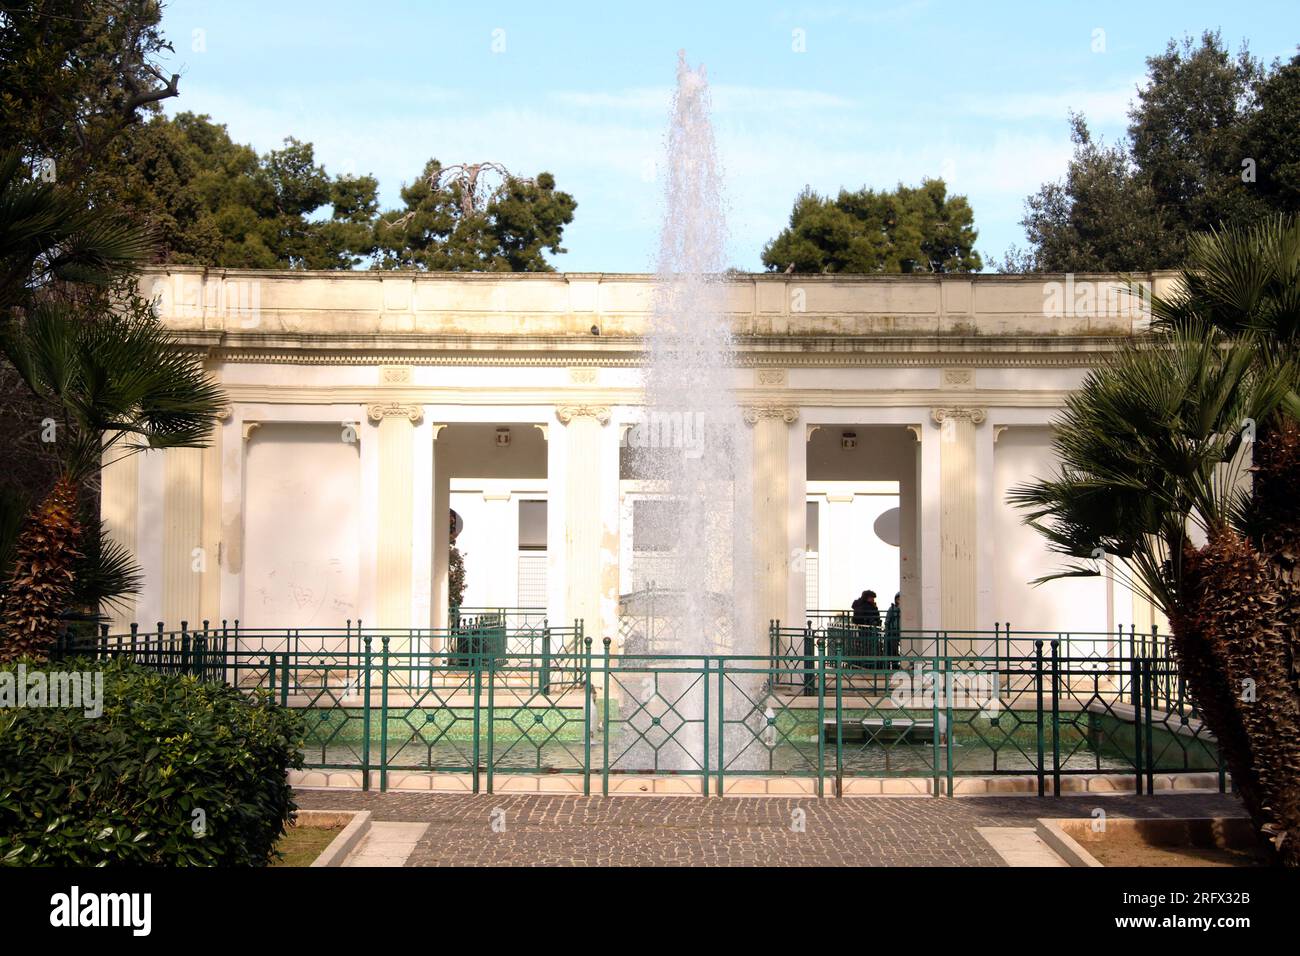 Lecce, Italy. Water fountain in Giuseppe Garibaldi Park/ Villa Comunale. Stock Photo